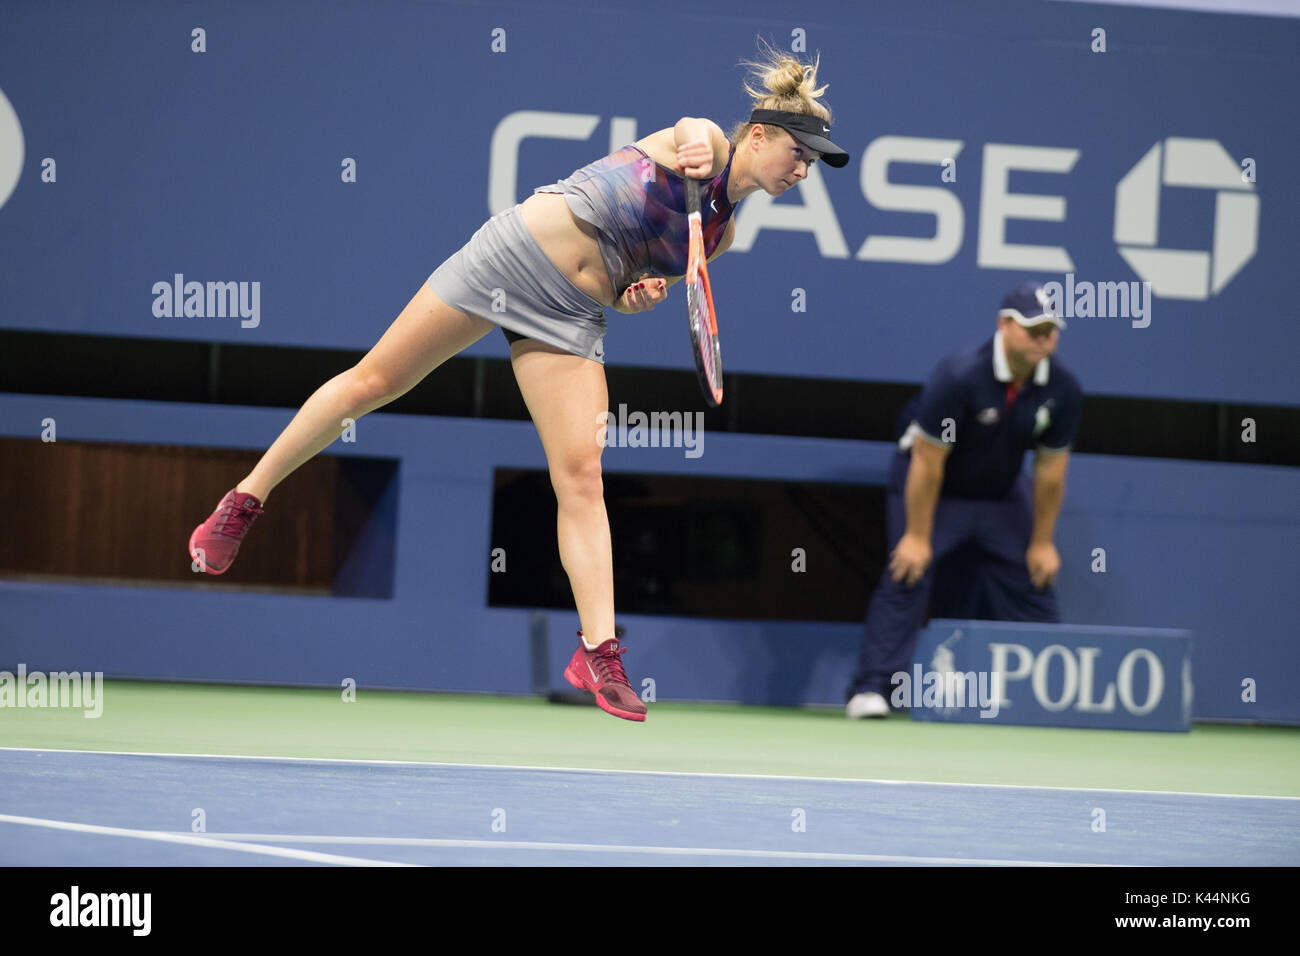 New York City, United States. 4 Septembre, 2017. Elina Svitolina de l'Ukraine à l'US Open 2017 tournoi de Grand Slam Tennis © Jimmie48 Photographie/Alamy Live News Banque D'Images